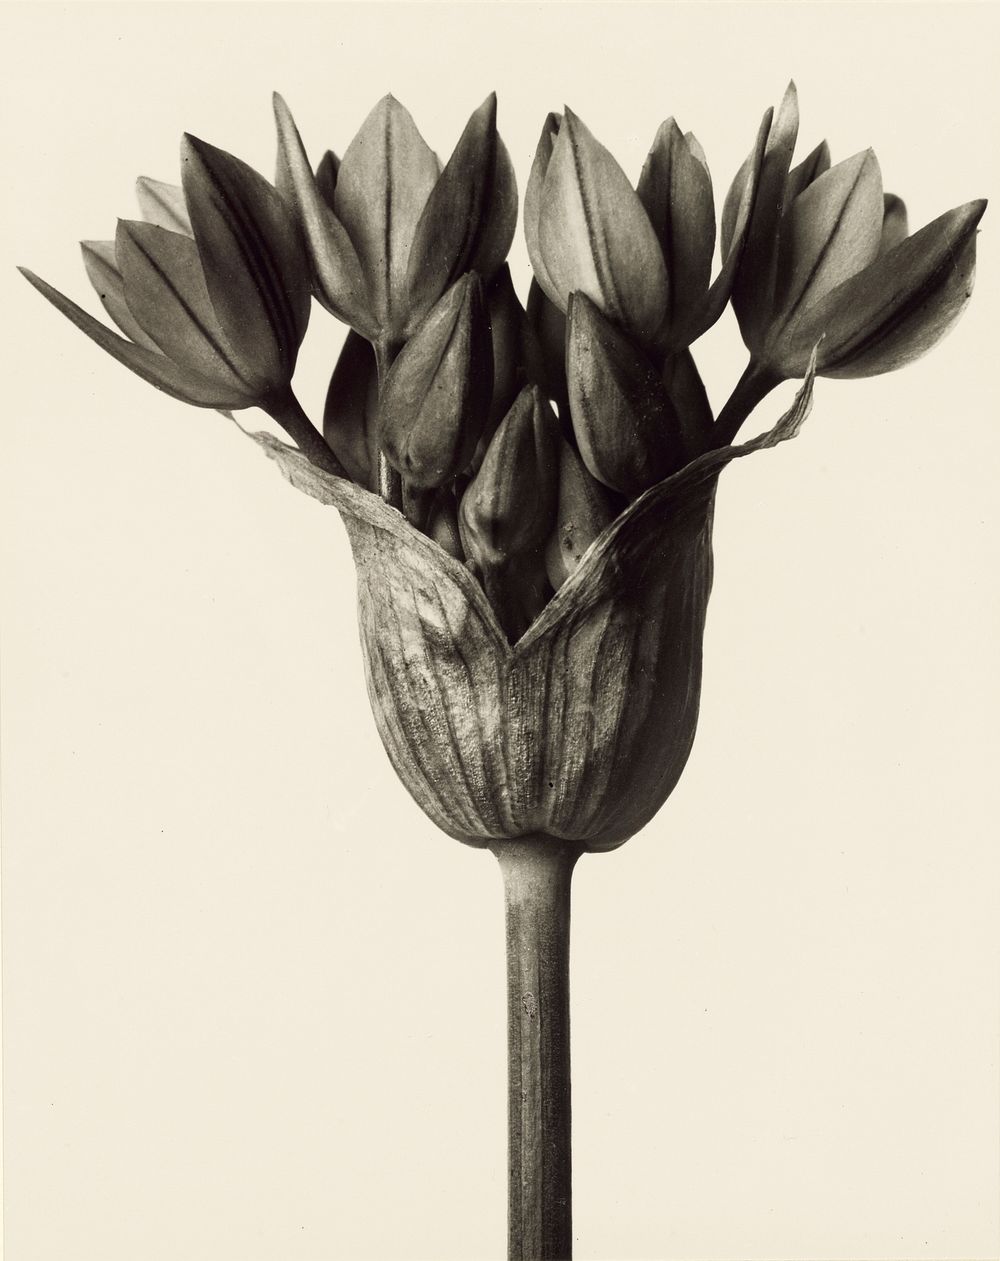 Allium ostrowskianum, Knoblauchpflanze by Karl Blossfeldt (1928)